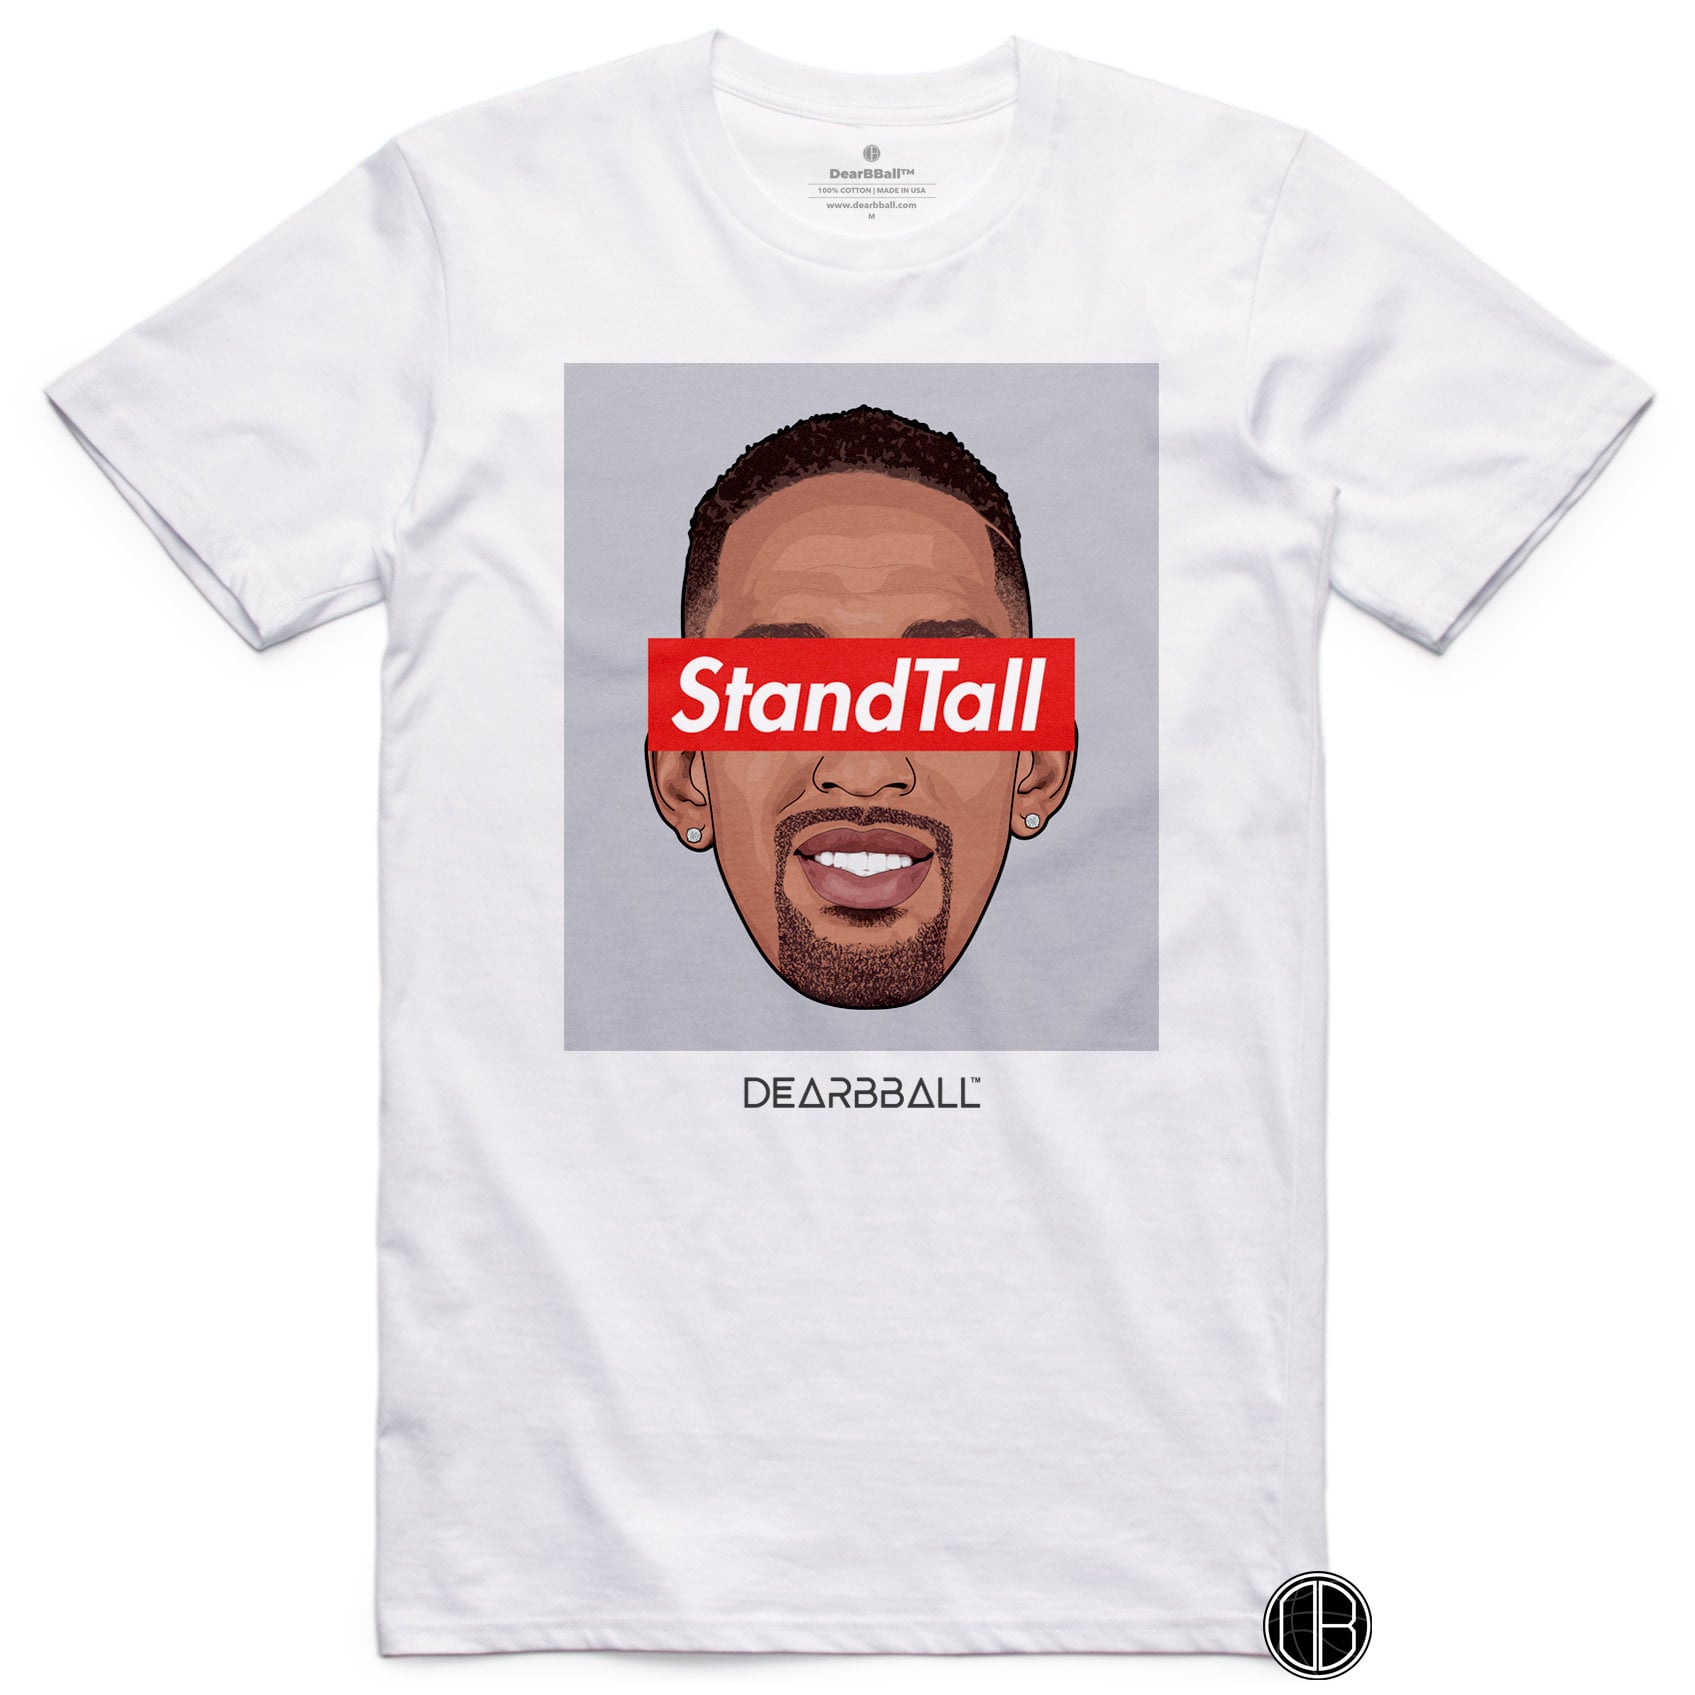 DearBBall T-Shirt - STANDTALL